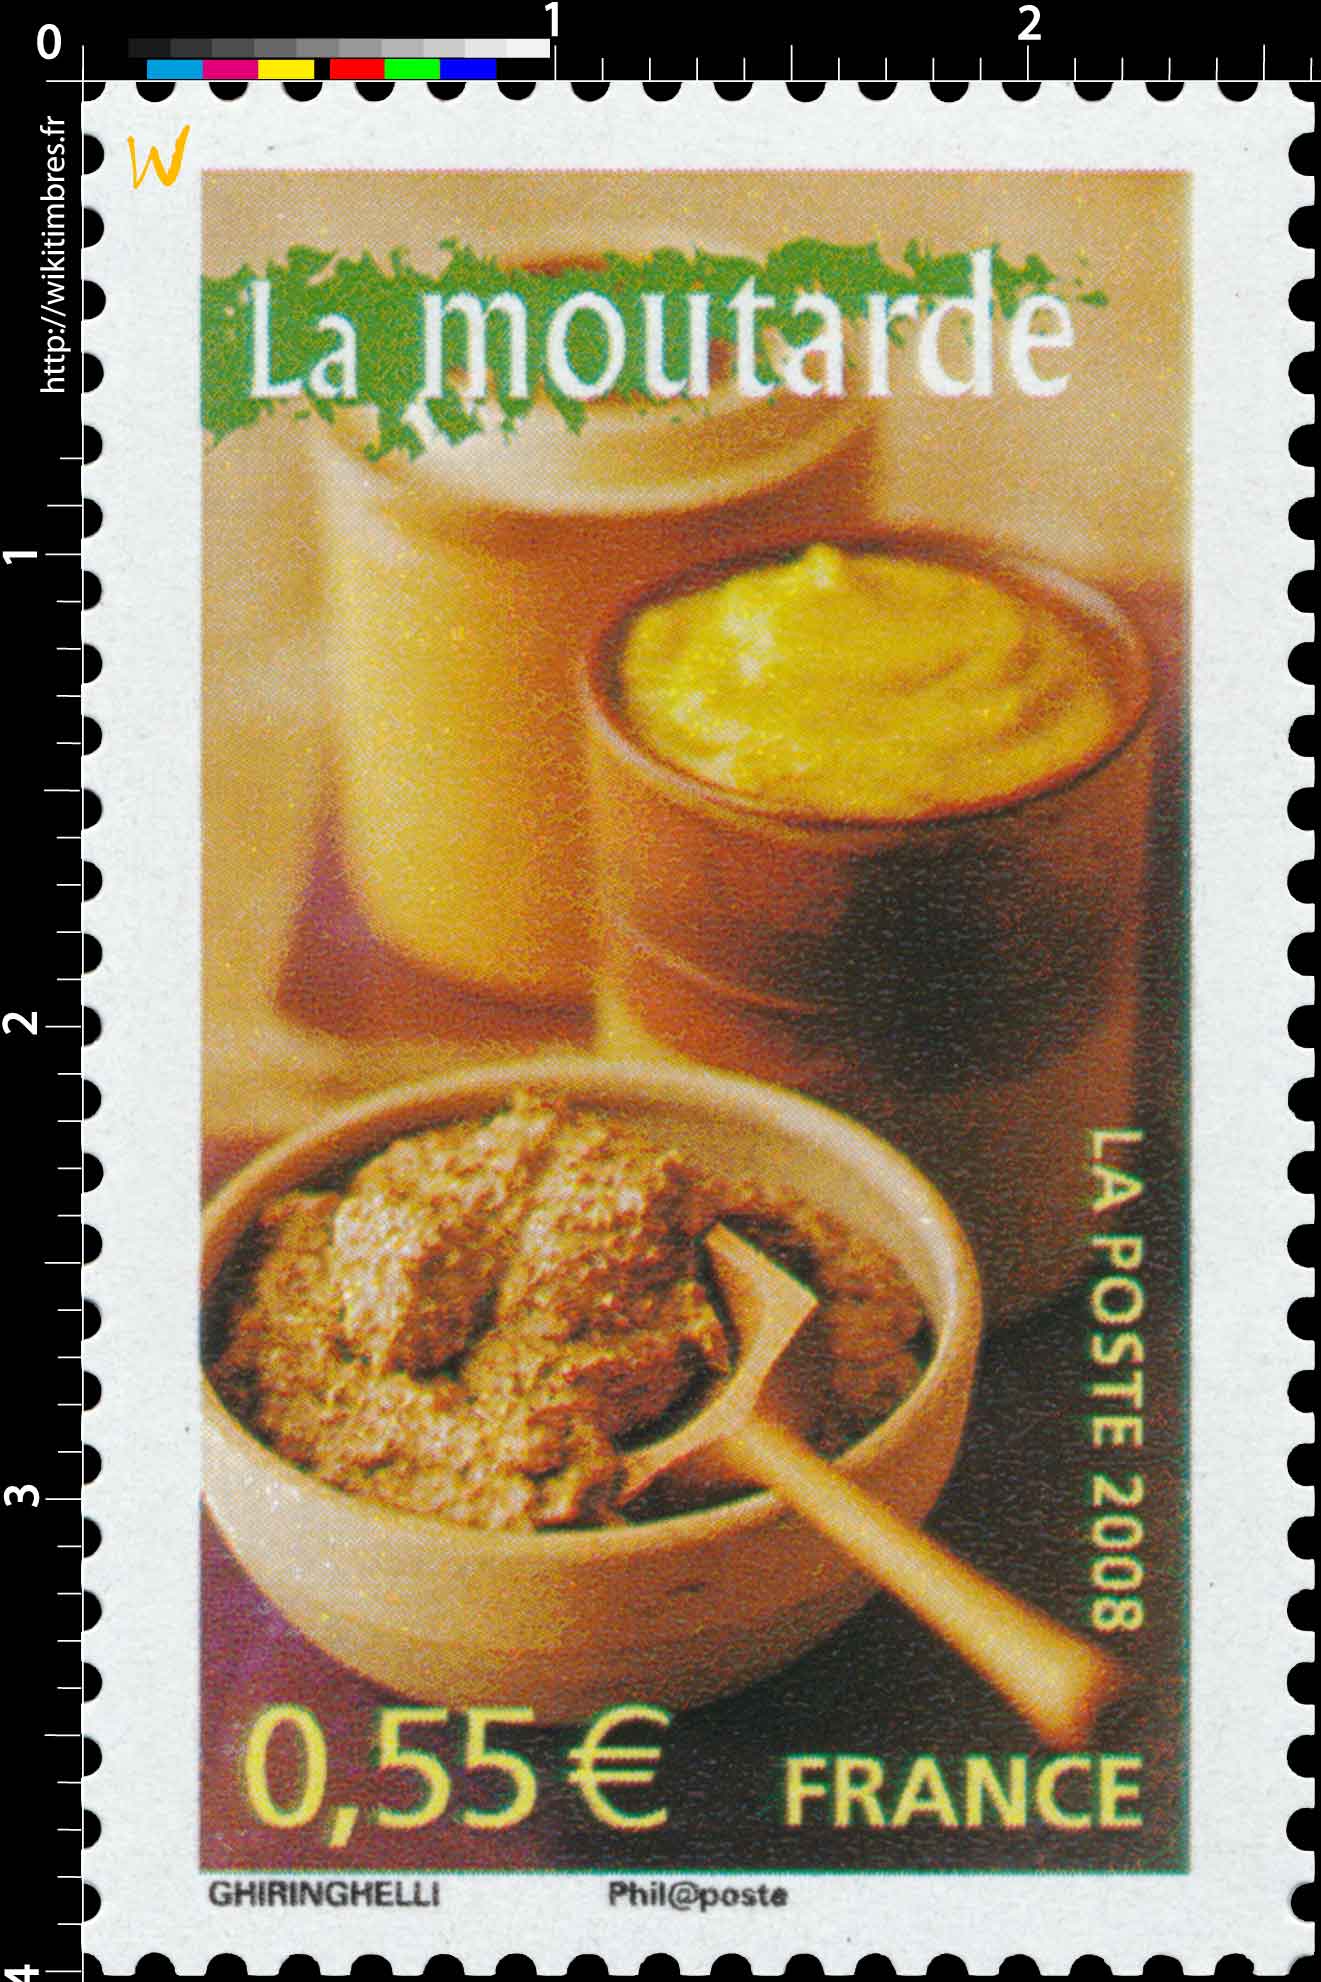 2008 La moutarde